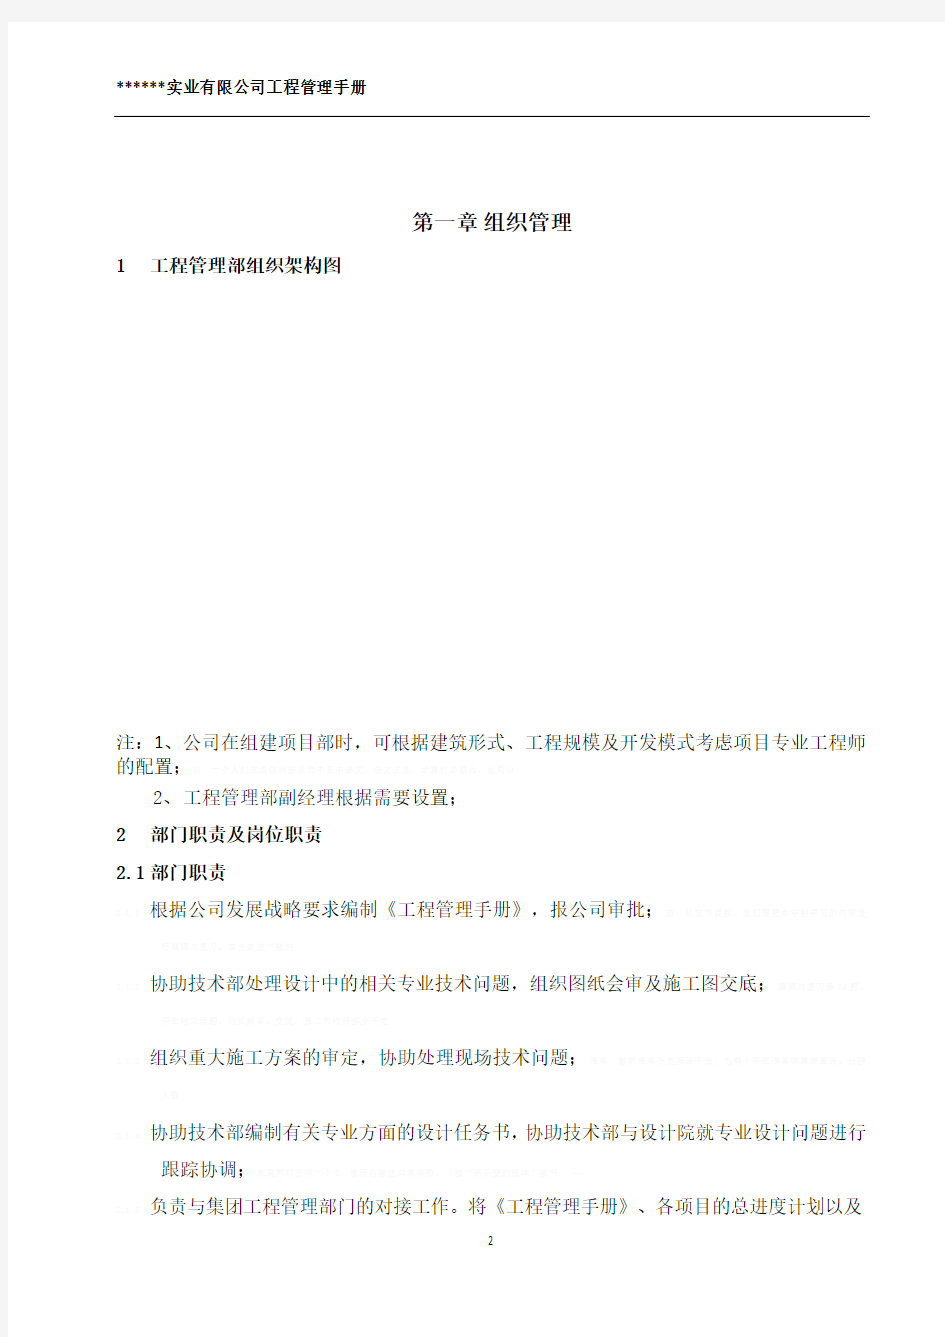 [四川]地产公司工程管理部编制项目管理手册(185页 图表齐全)16920